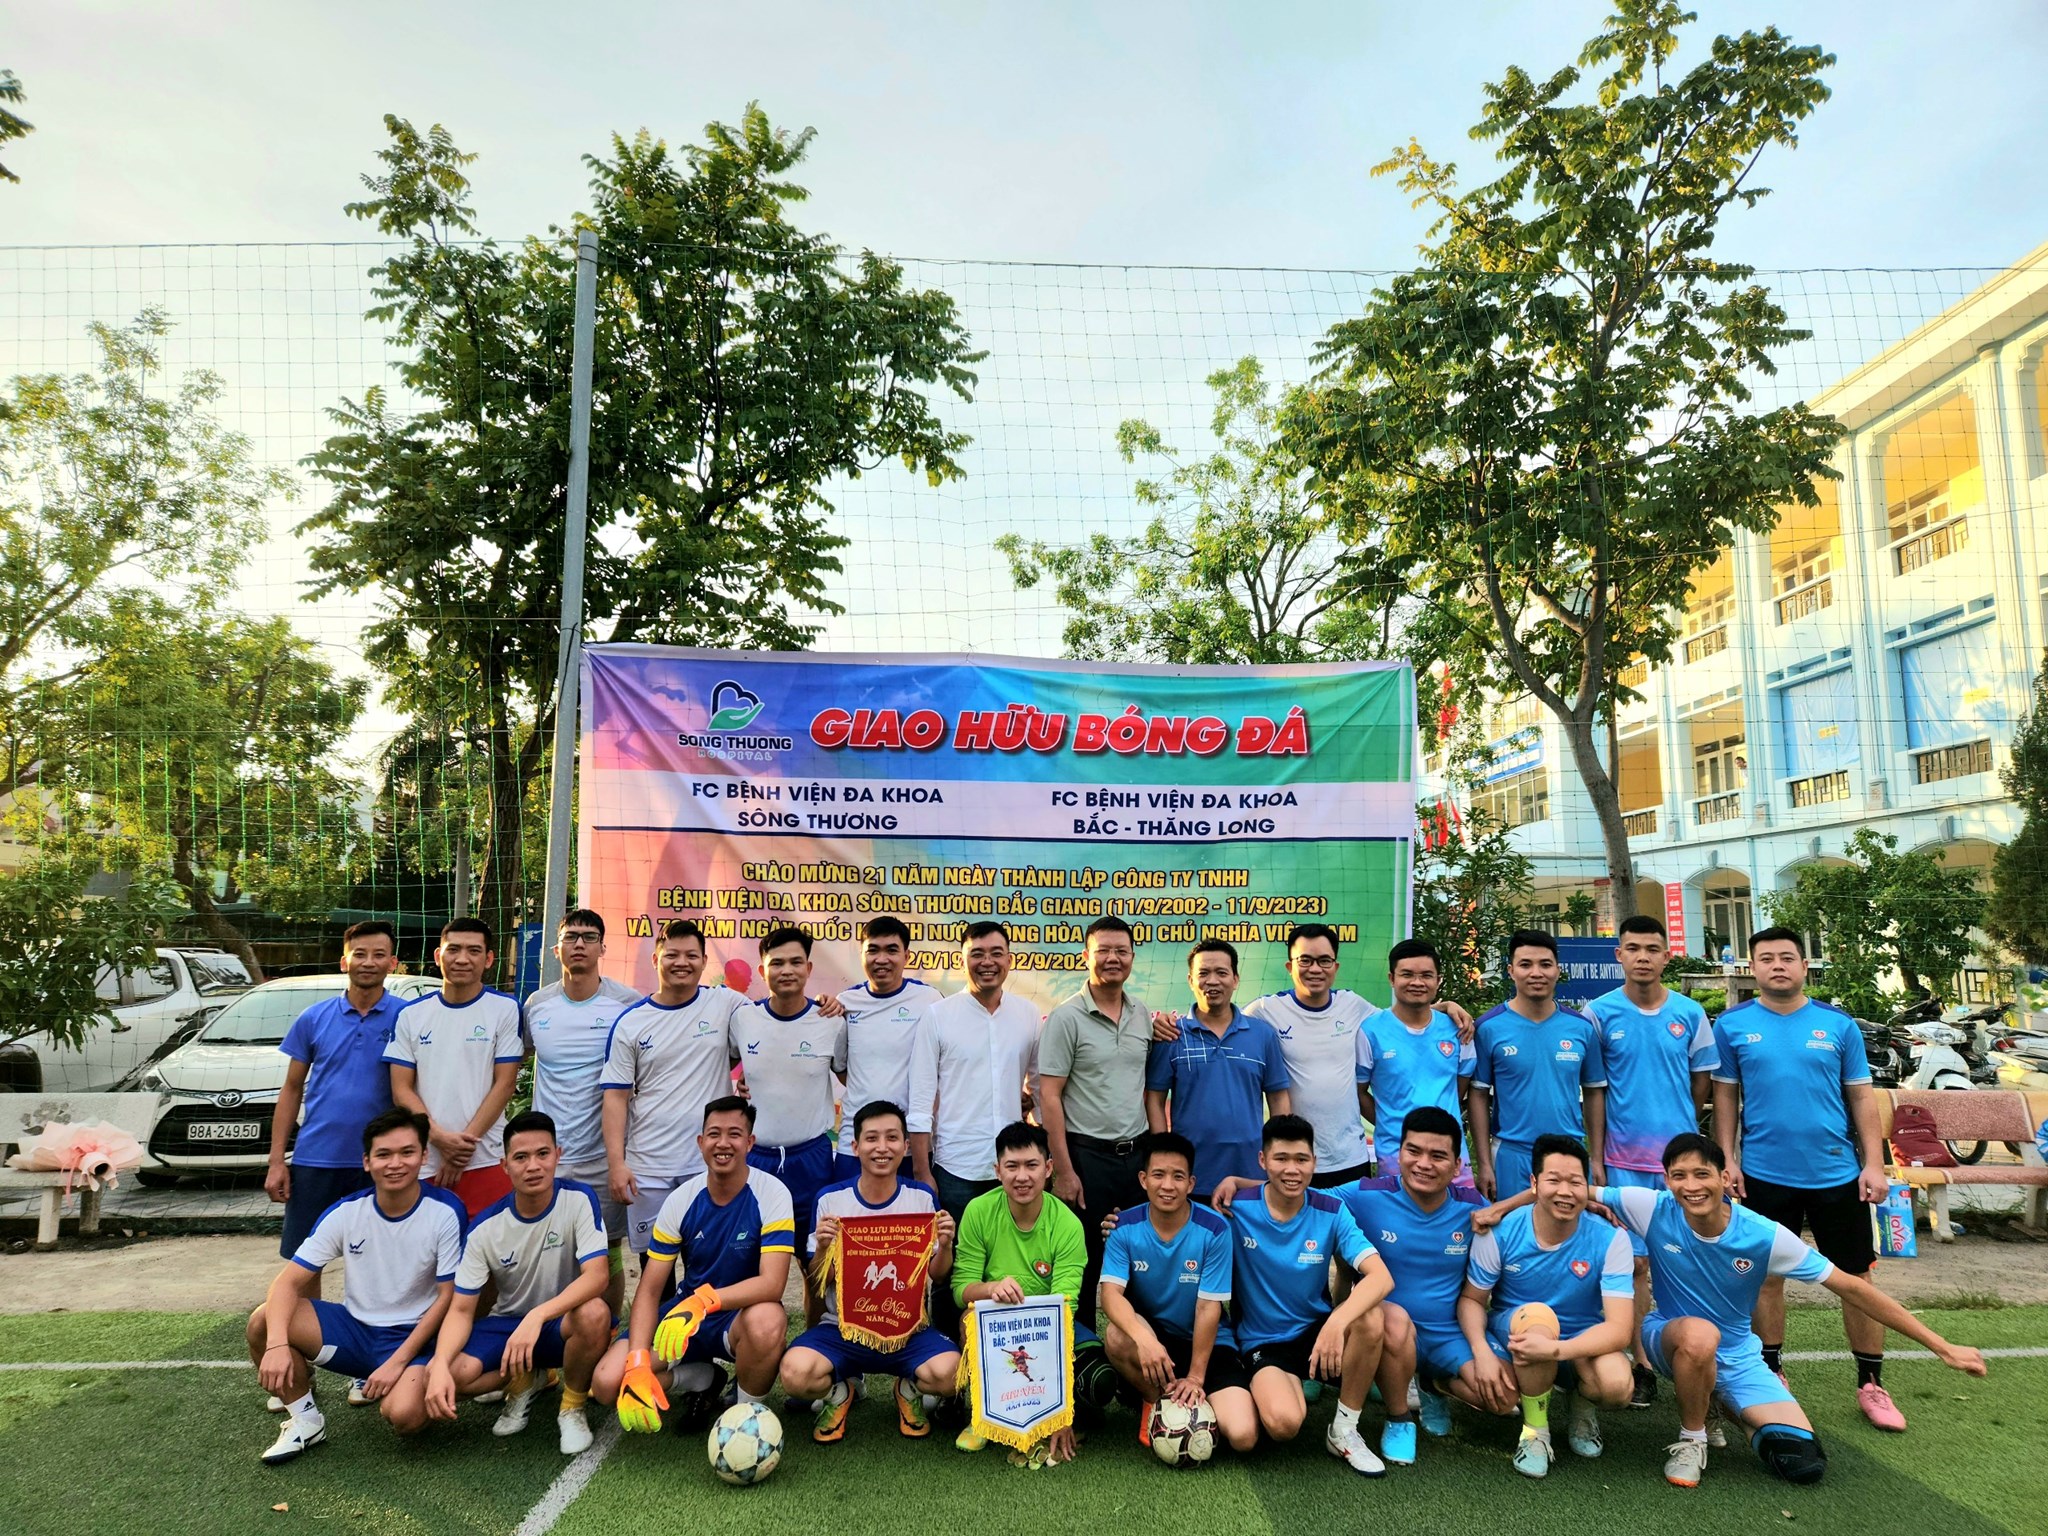 Giao lưu bóng đá nhân dịp kỷ niệm 21 năm thành lập Bệnh viện & chào mừng 78 năm Quốc Khánh 2.9